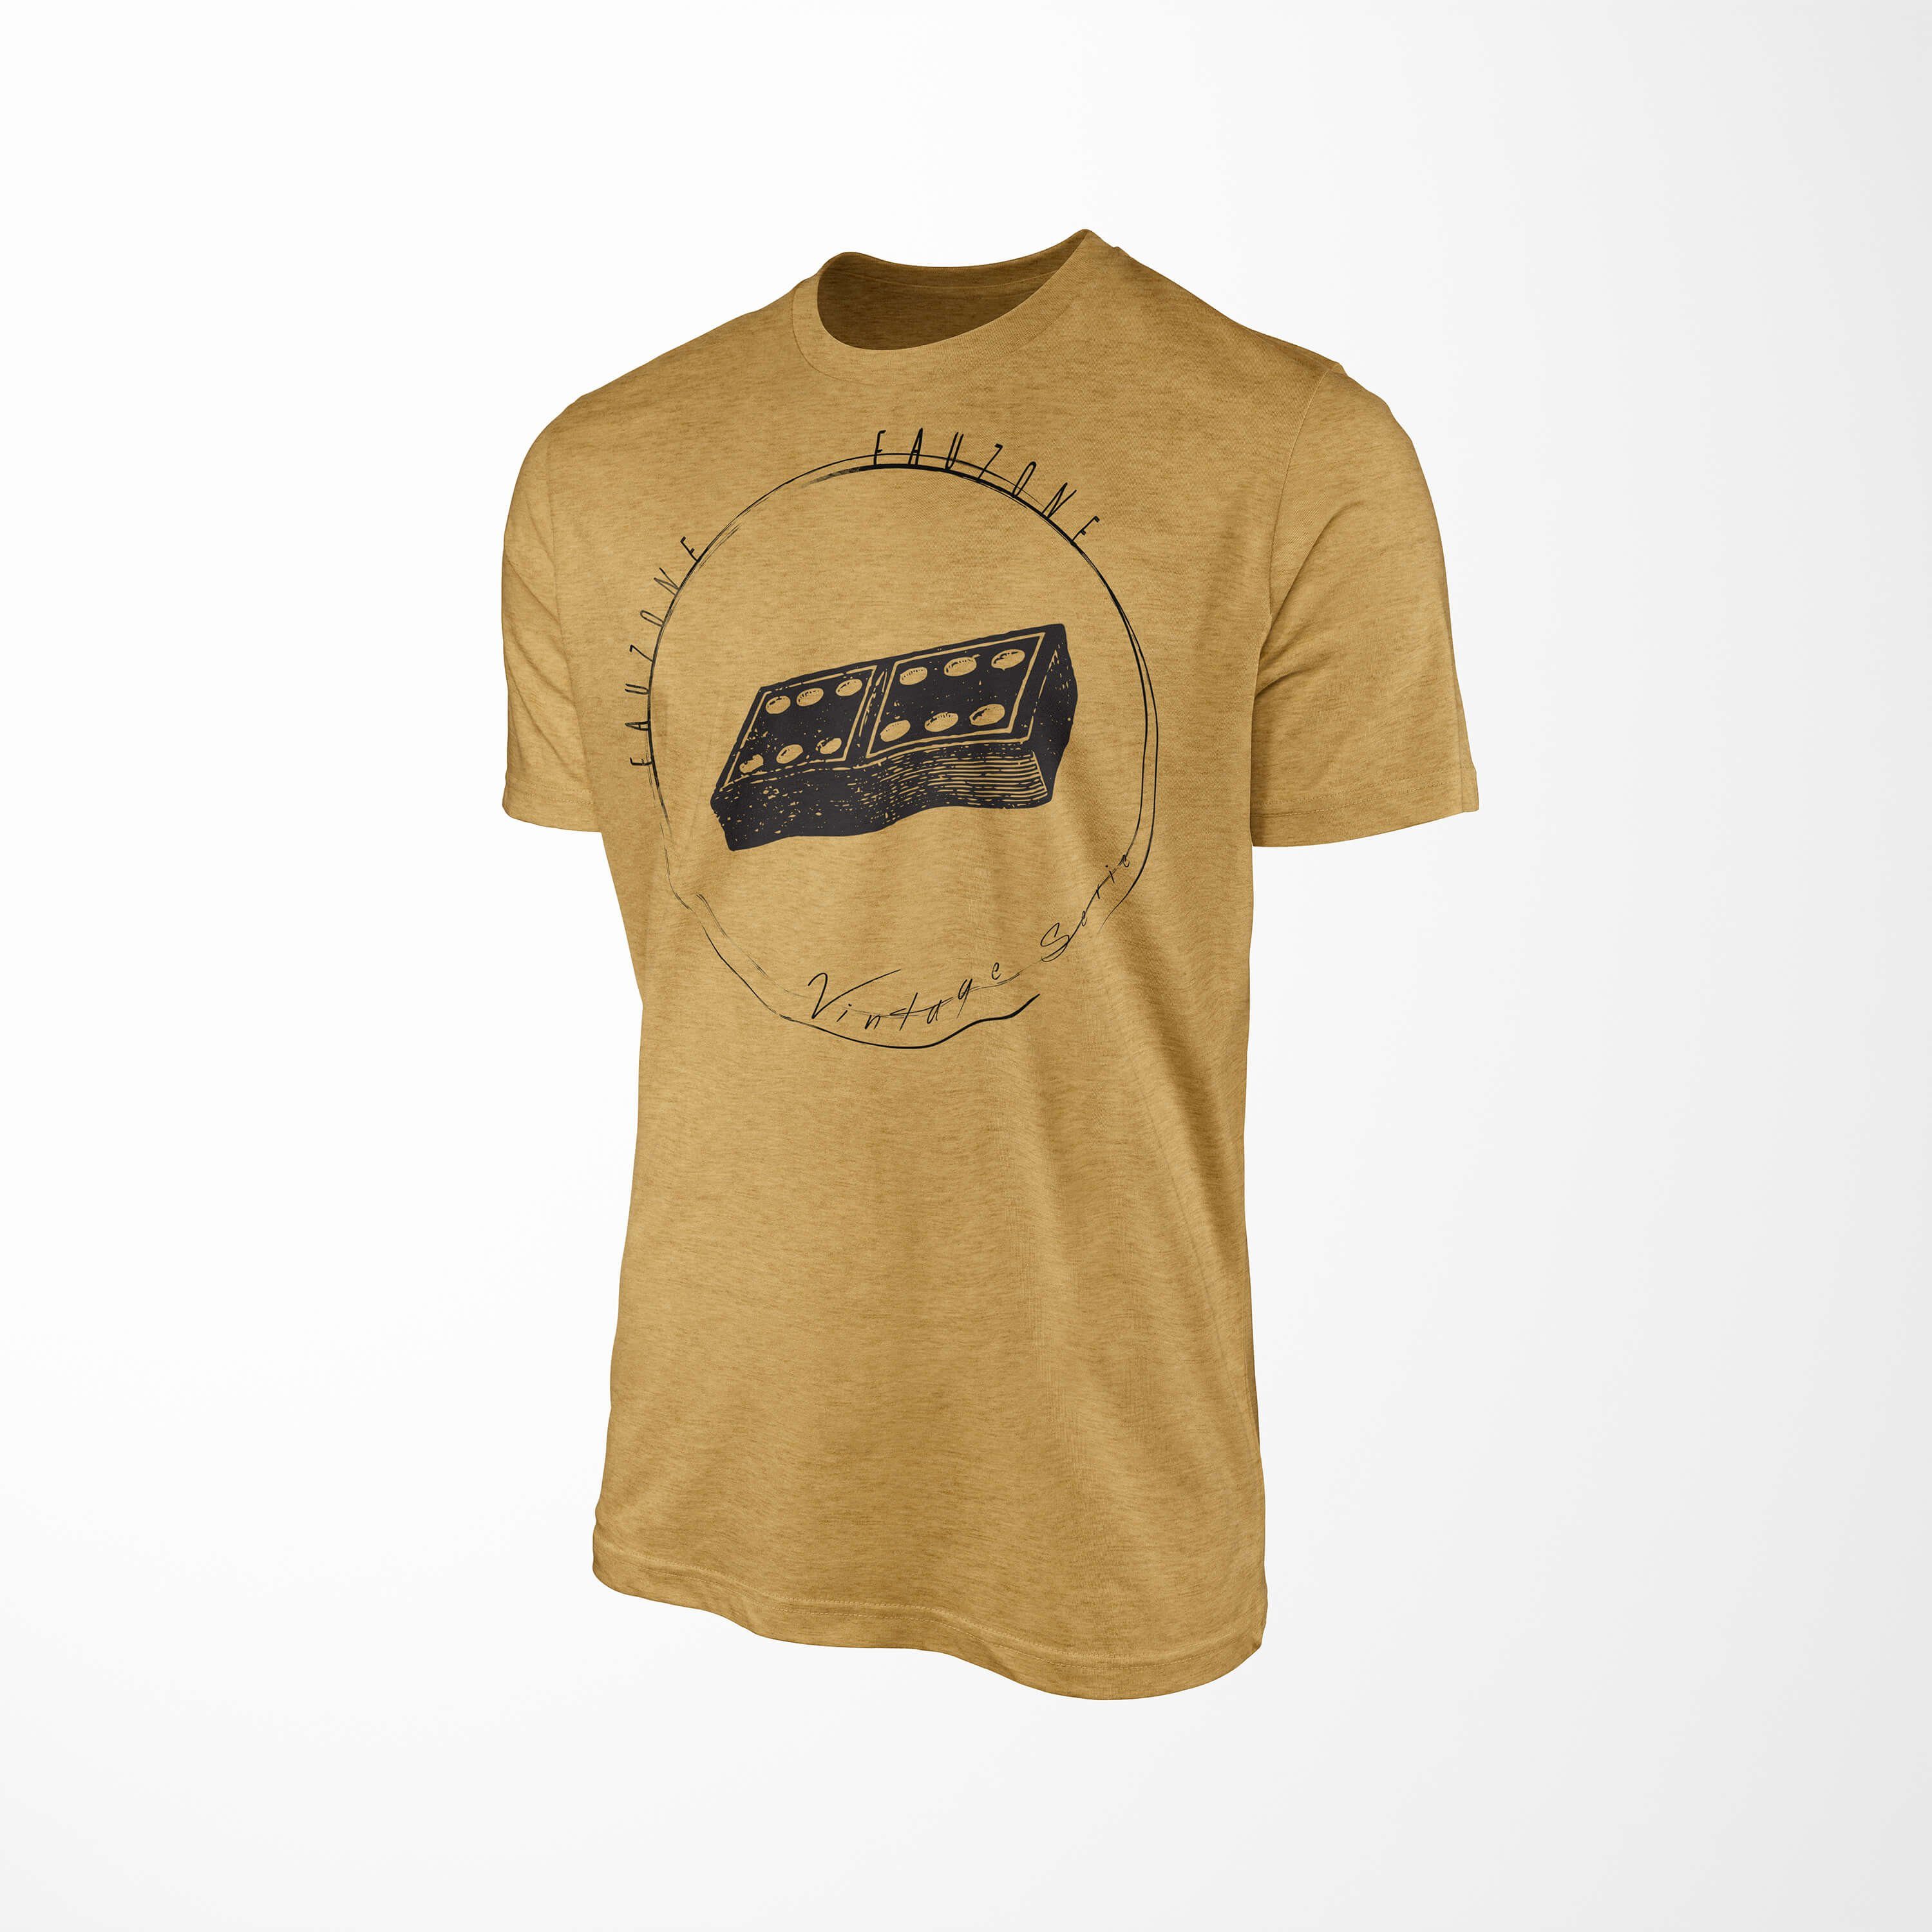 Sinus Art T-Shirt Vintage Herren Gold Dominostein T-Shirt Antique